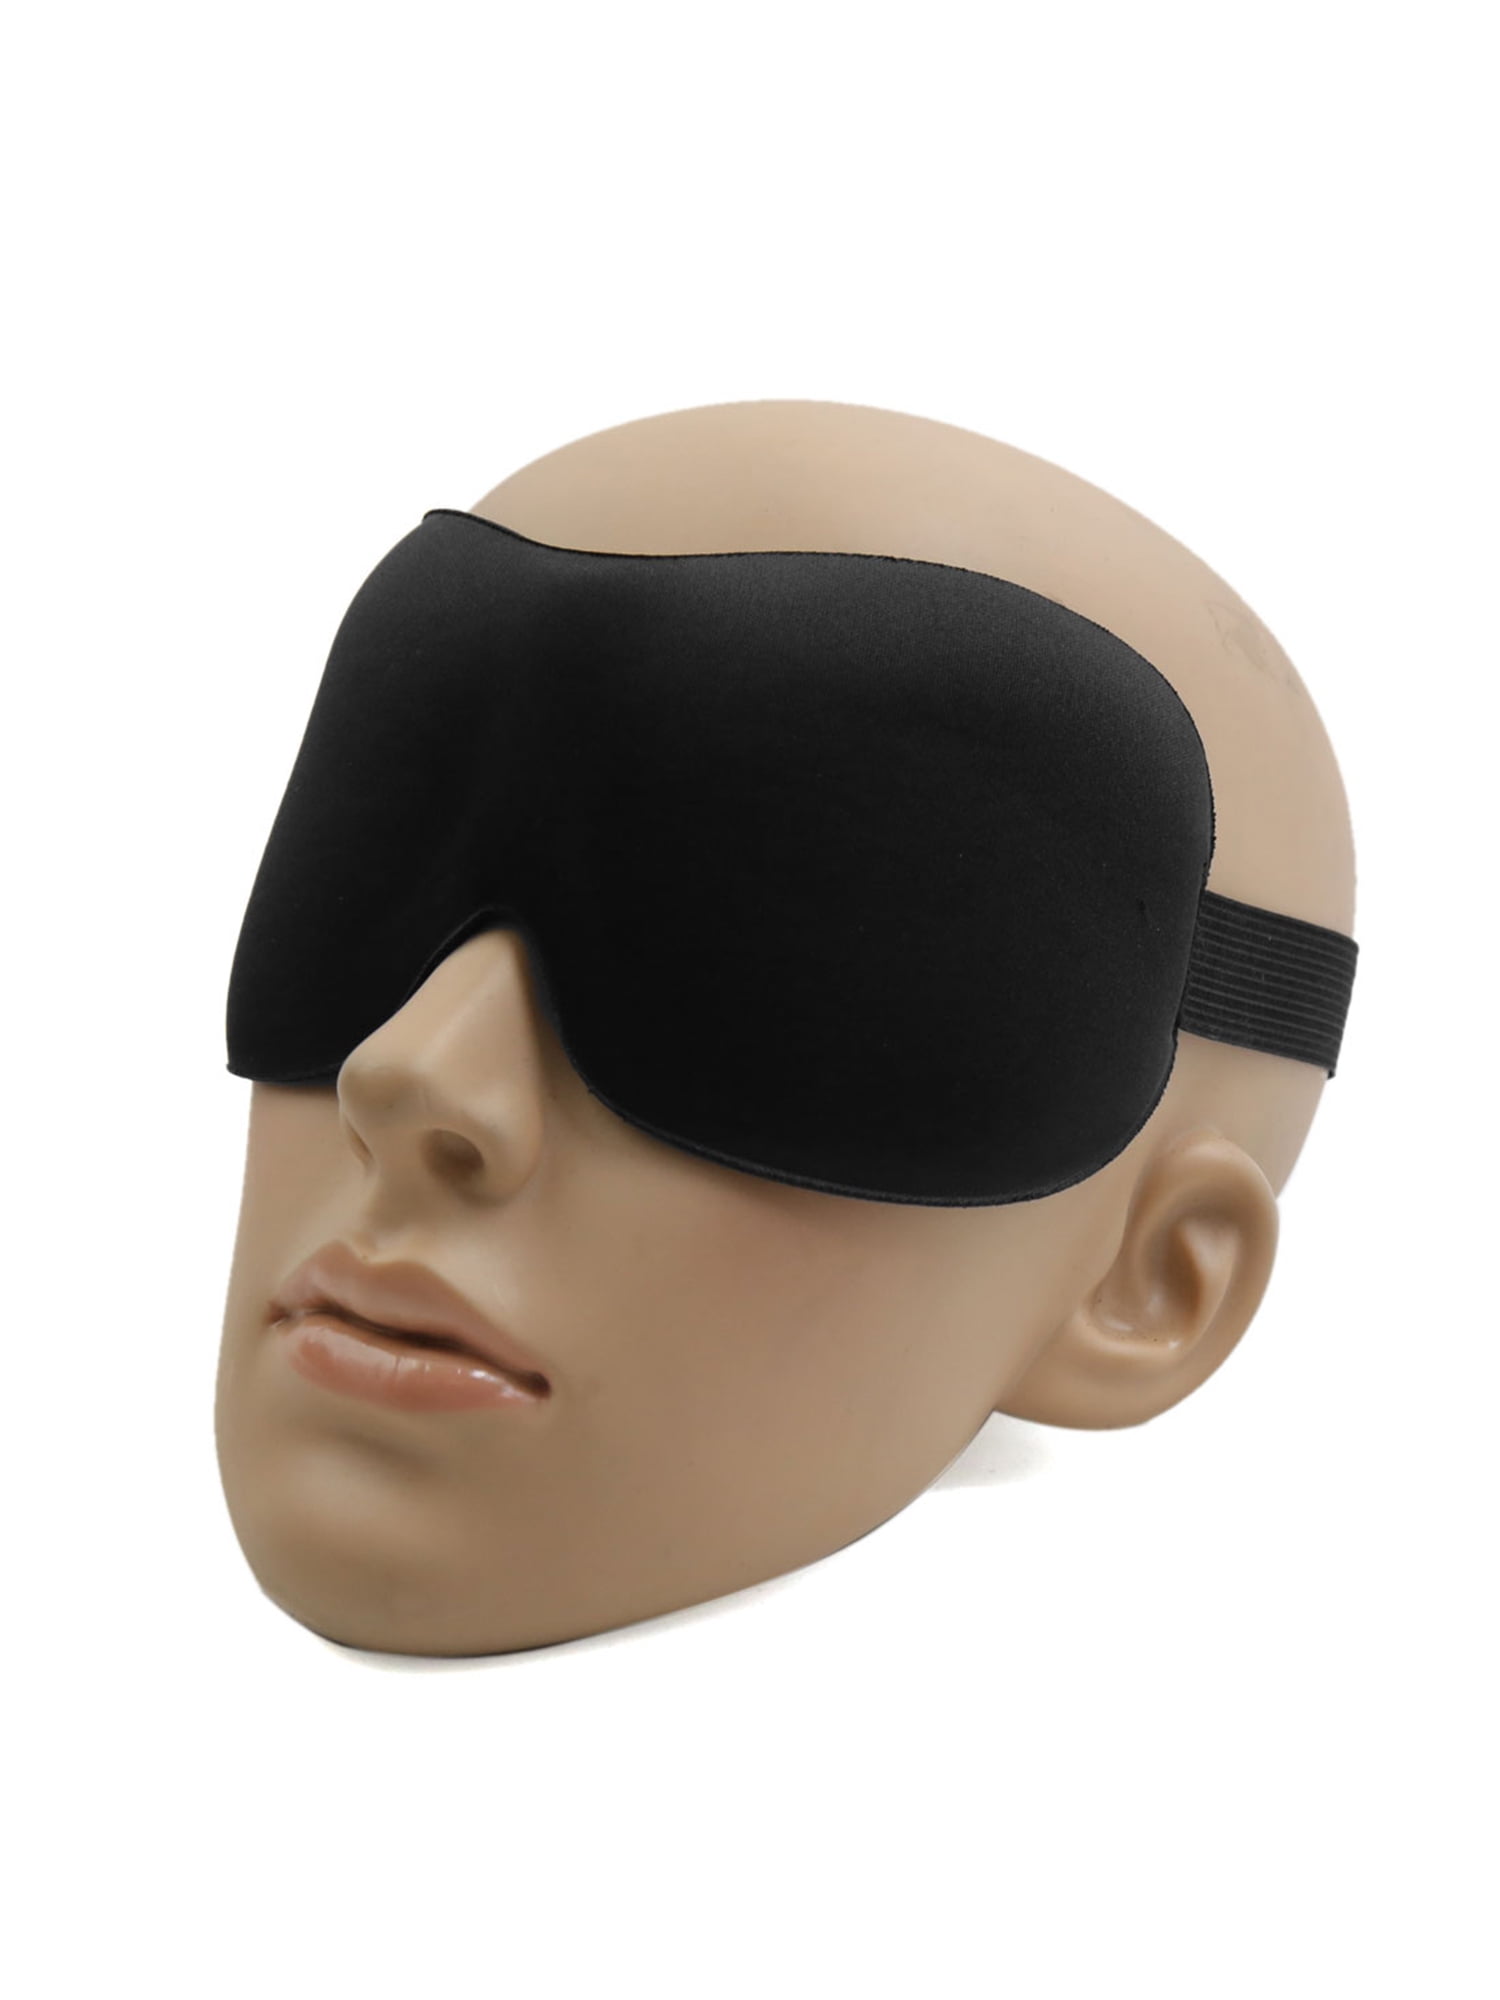 500 Lot Wholesale Sleep Eye Mask Soft Sleeping blindfold rest relax travel aid 